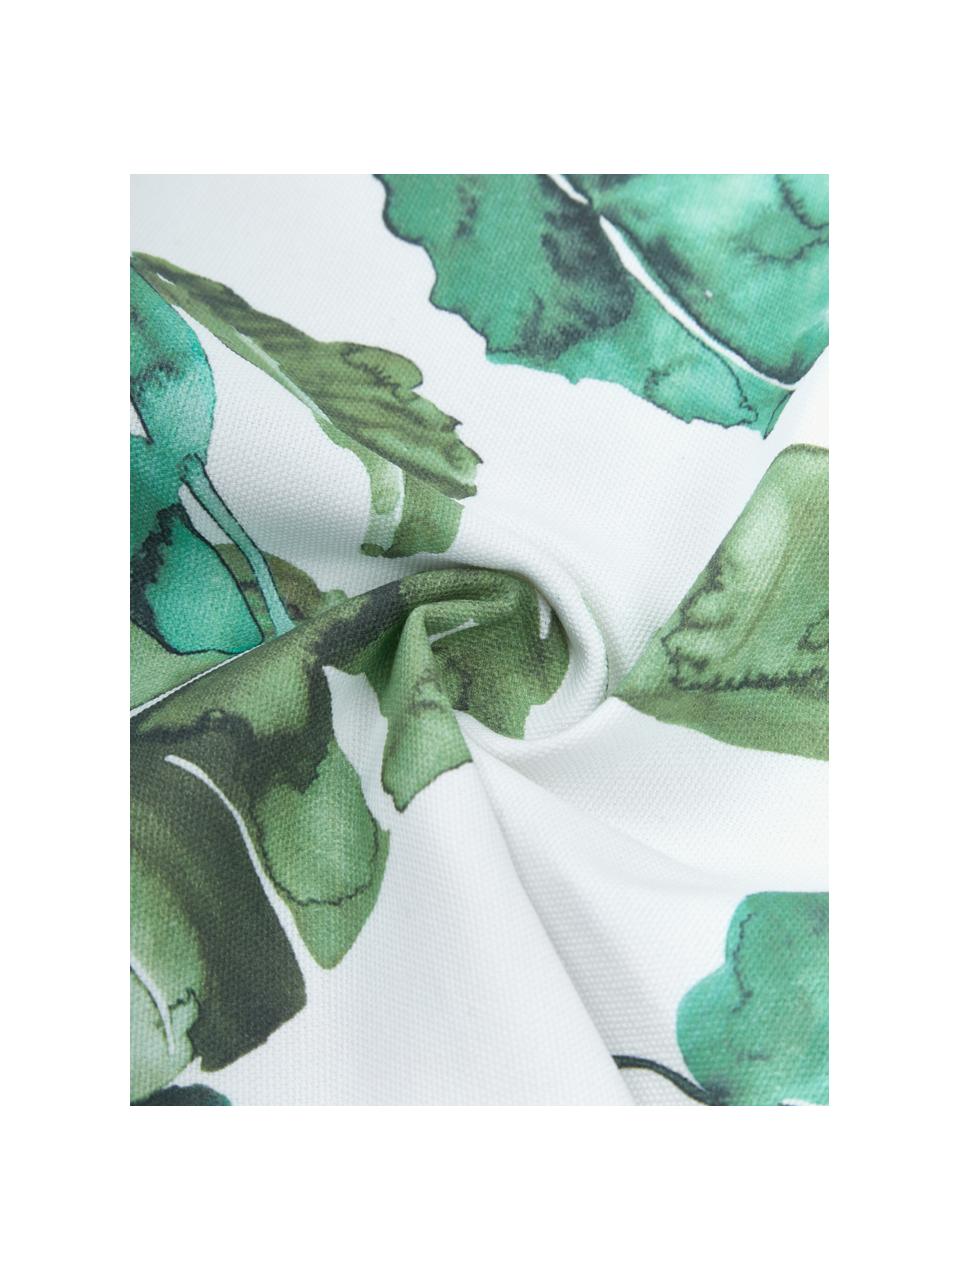 Baumwoll-Kissenhülle Shade mit Blättermotiven, 100% Baumwolle, Grün, Weiss, B 45 x L 45 cm